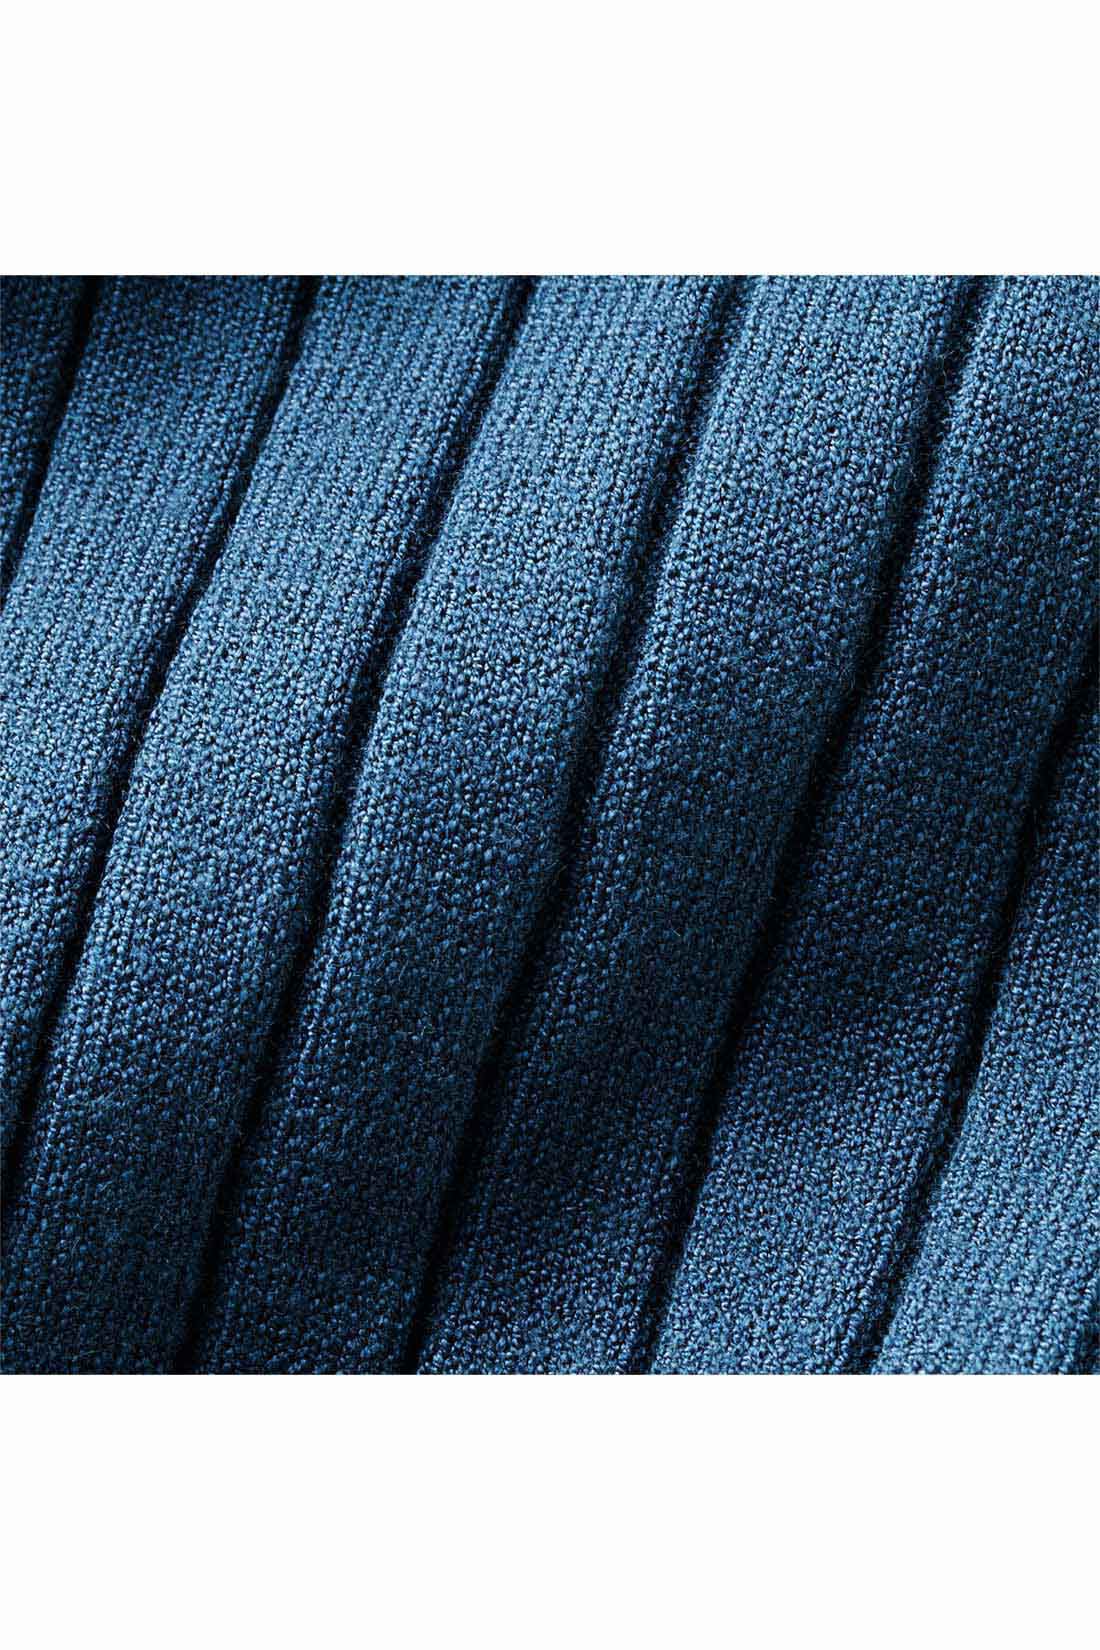 IEDIT[イディット]　キーネックデザインのワイドリブニットトップス〈ブルー〉|滑らかな肌ざわりのレーヨン混素材のワイドリブニット。 ※お届けするカラーとは異なります。